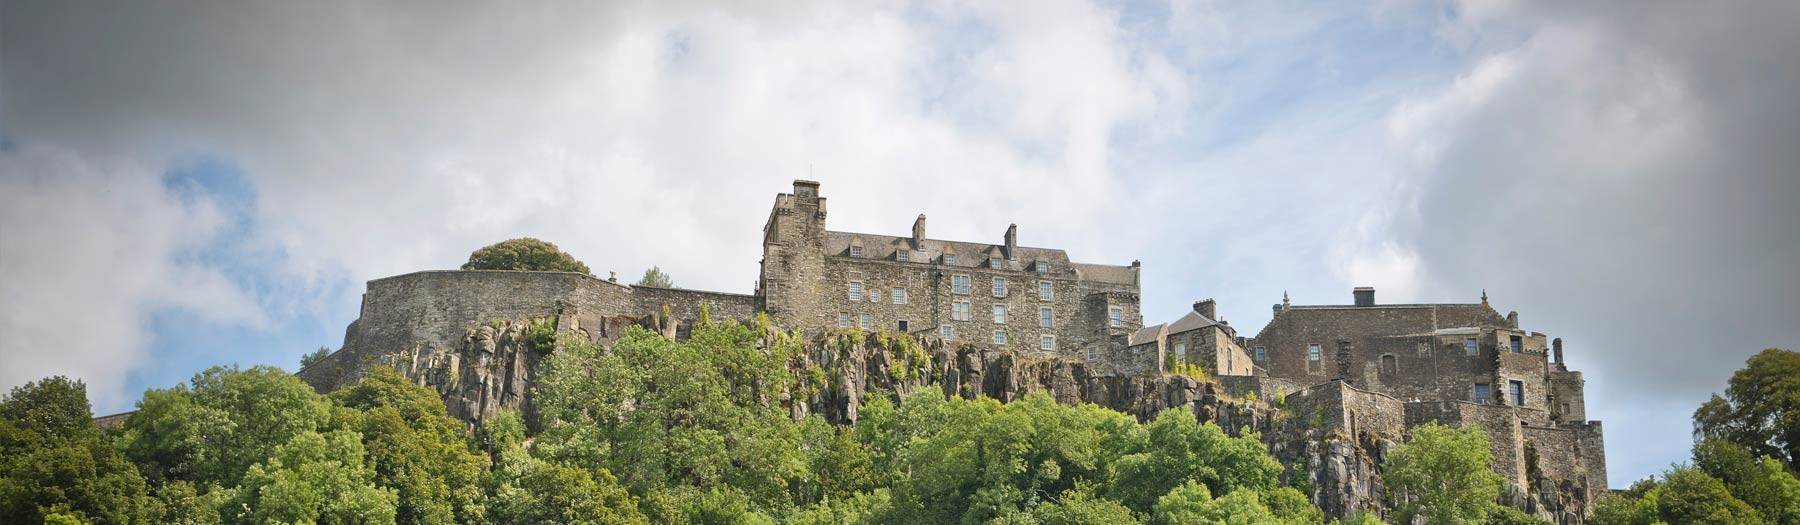 Image: Stirling Castle. Credit: Image republished with kind permission of Destination Stirling.